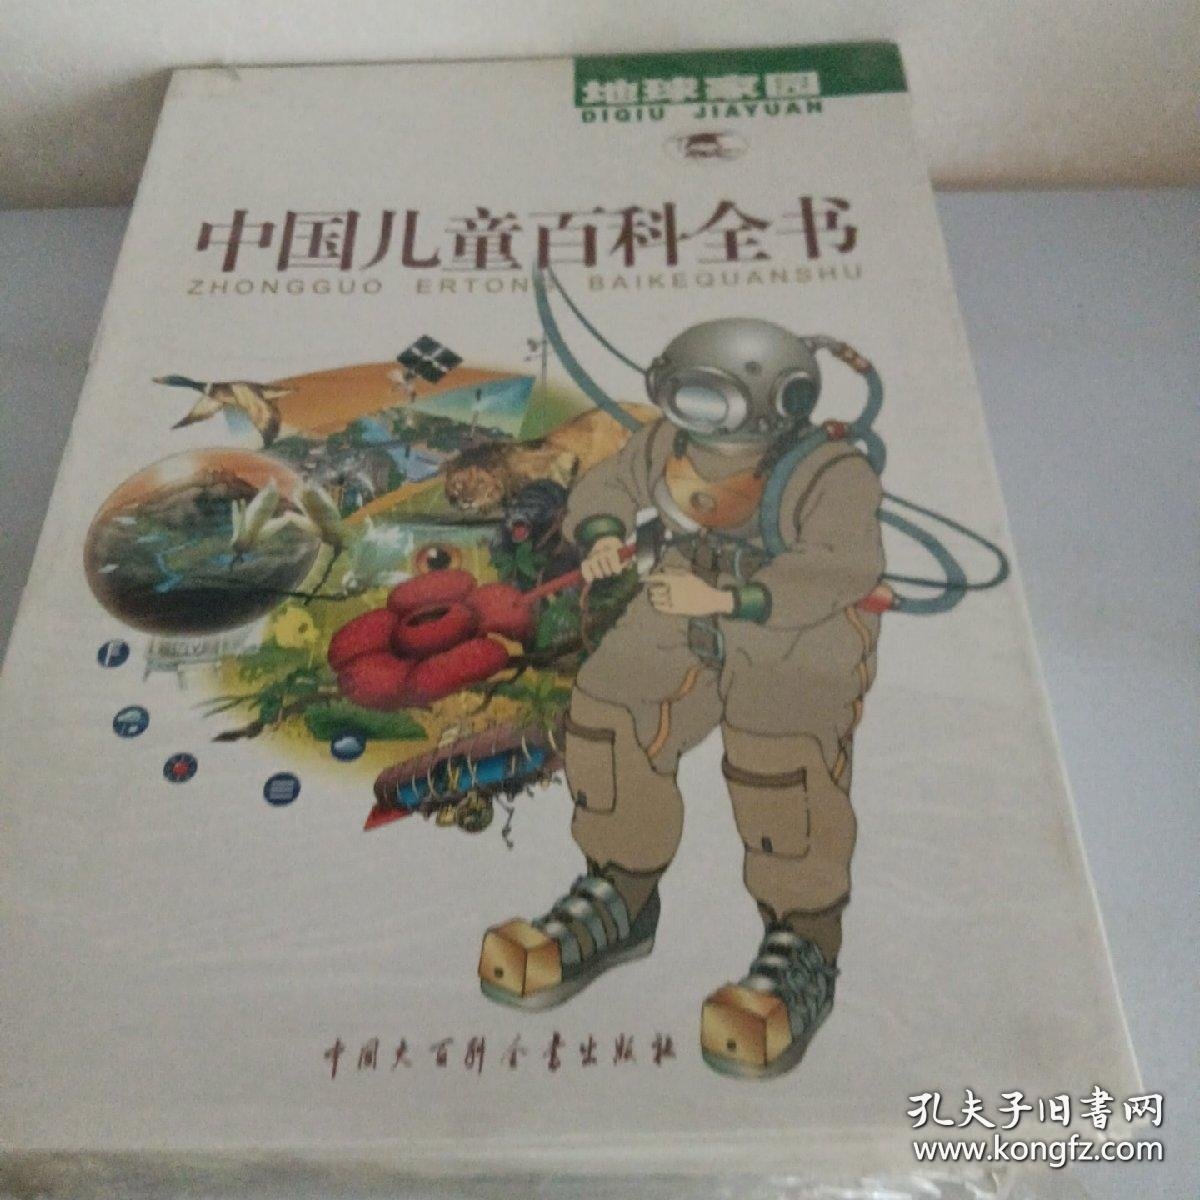 中国儿童百科全书:彩照+手绘彩图版共4册